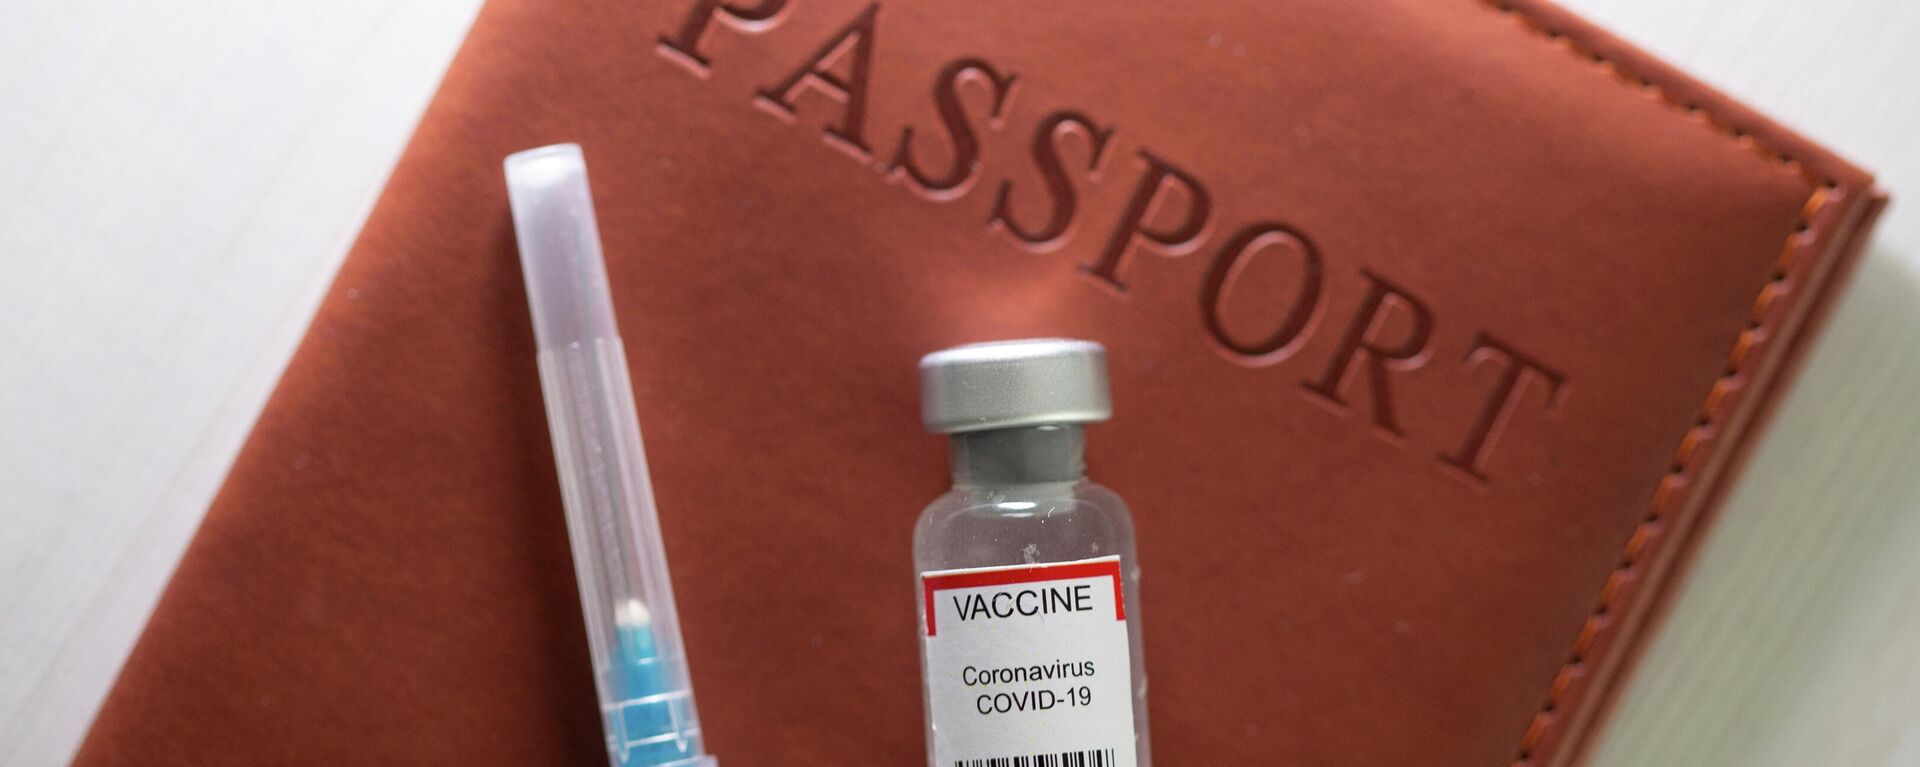 Pasaporte de vacunación contra el coronavirus - Sputnik Mundo, 1920, 21.05.2021